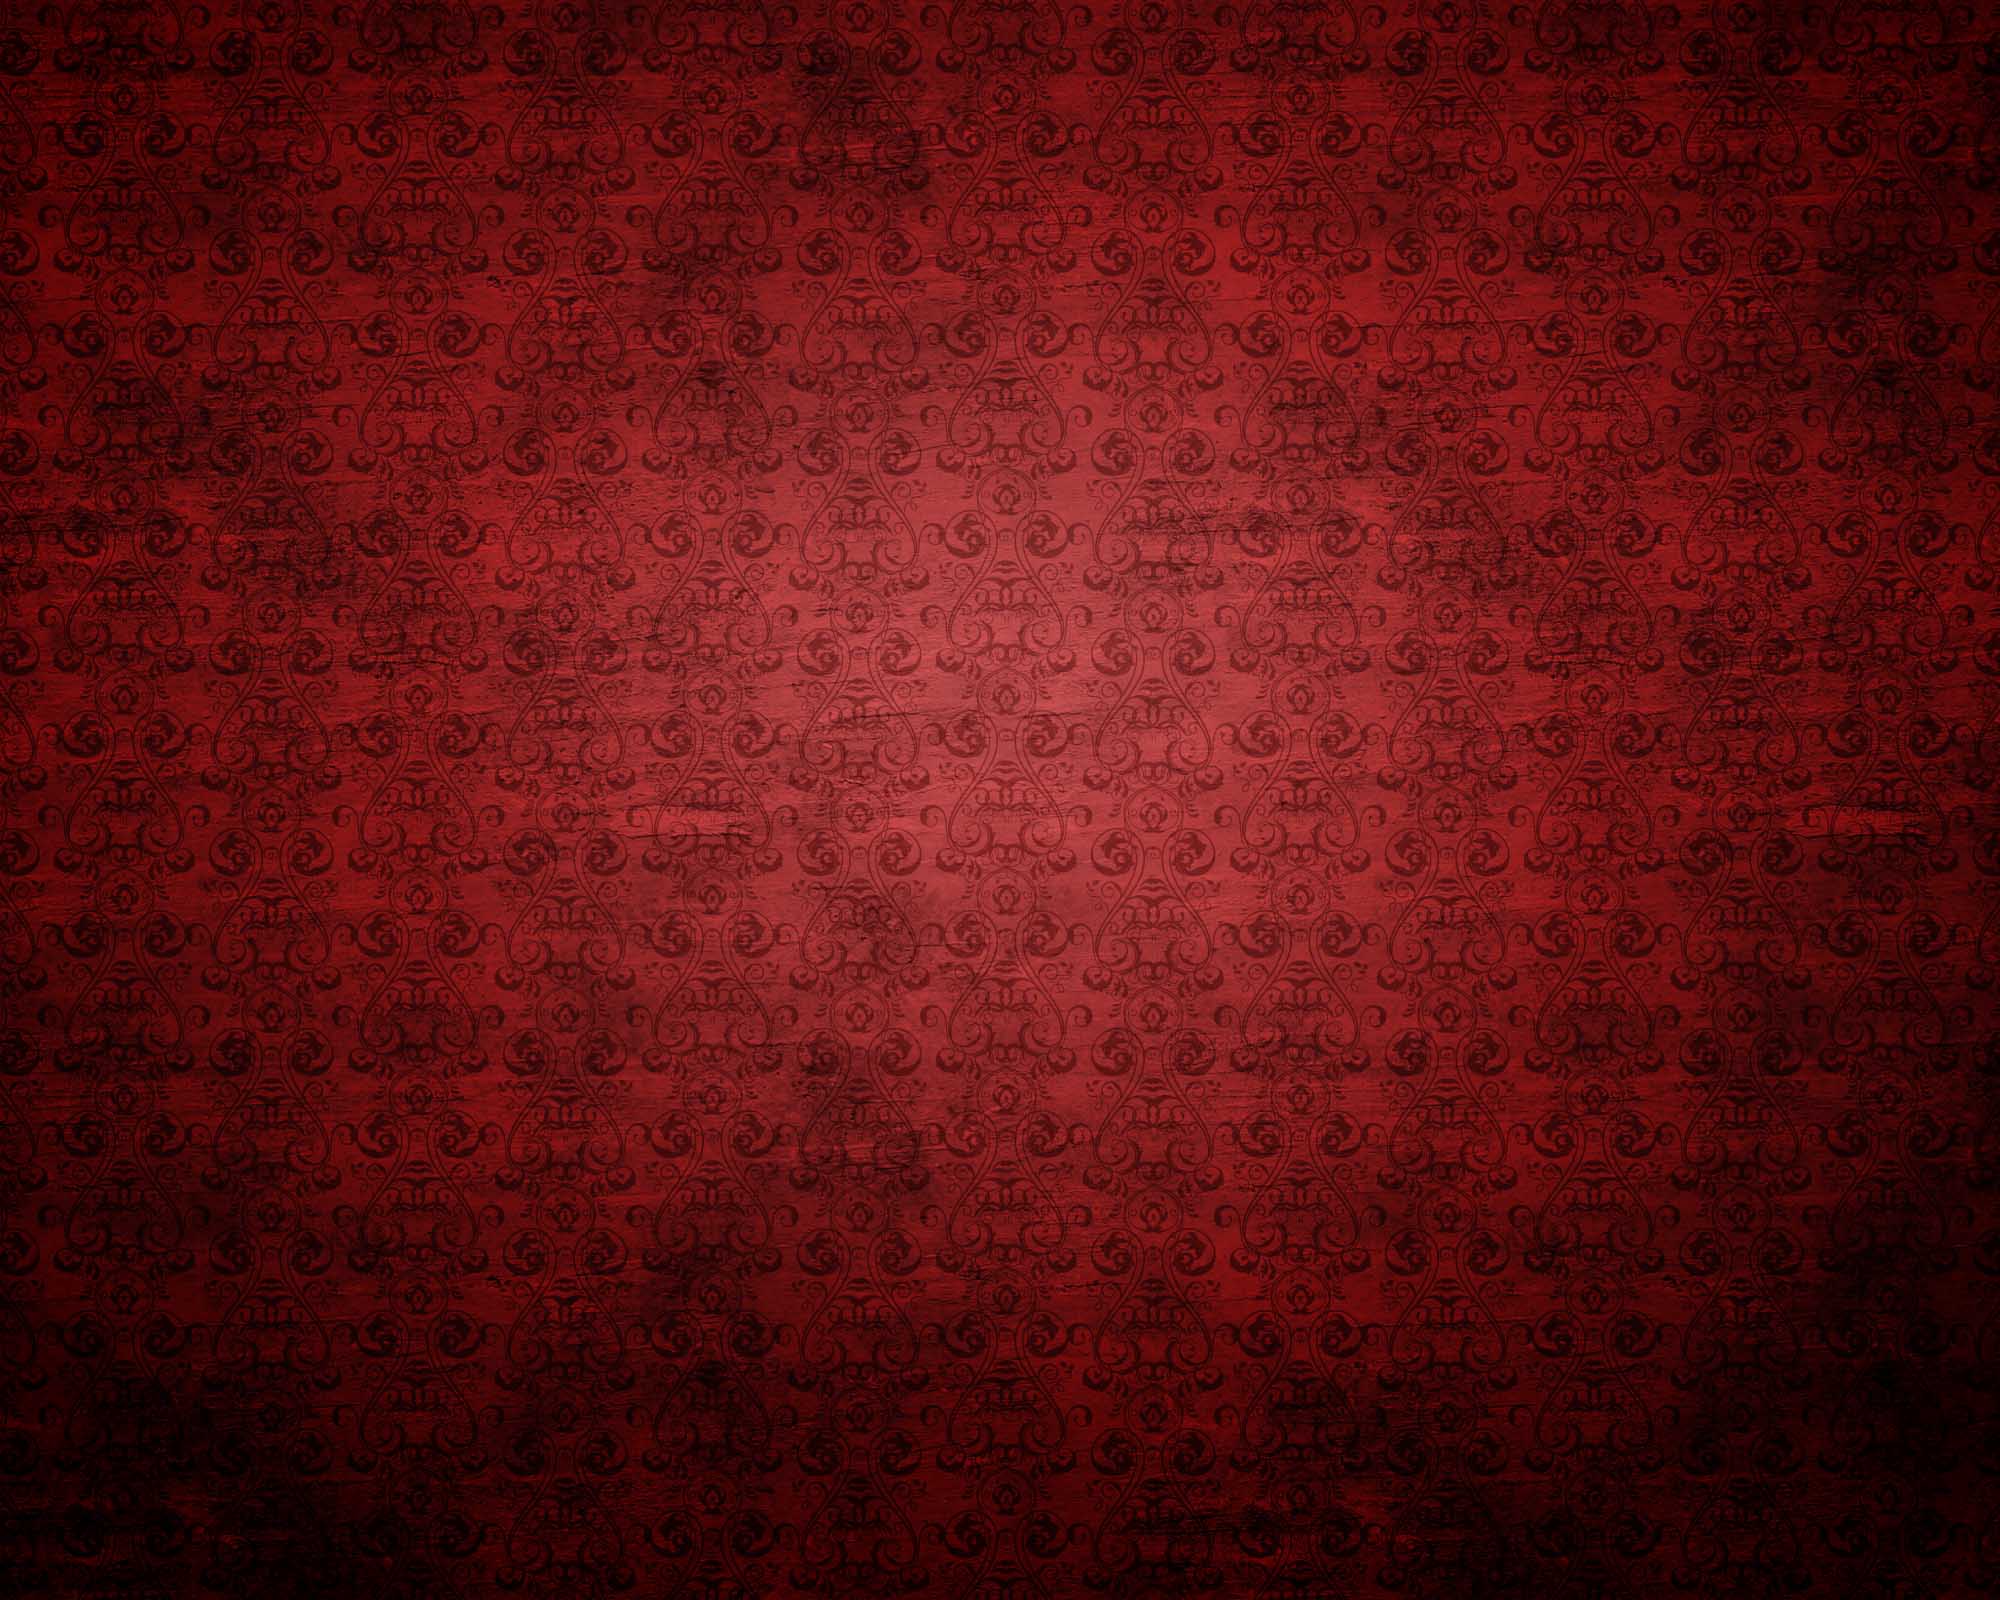 Hãy thử đổi hình nền của mình thành một thiết kế đỏ cổ điển lộng lẫy để tạo sự nổi bật cho trang màn hình của bạn! Hình nền đẹp này sẽ làm cho mọi người trầm trồ khi chúng được nhìn thấy.